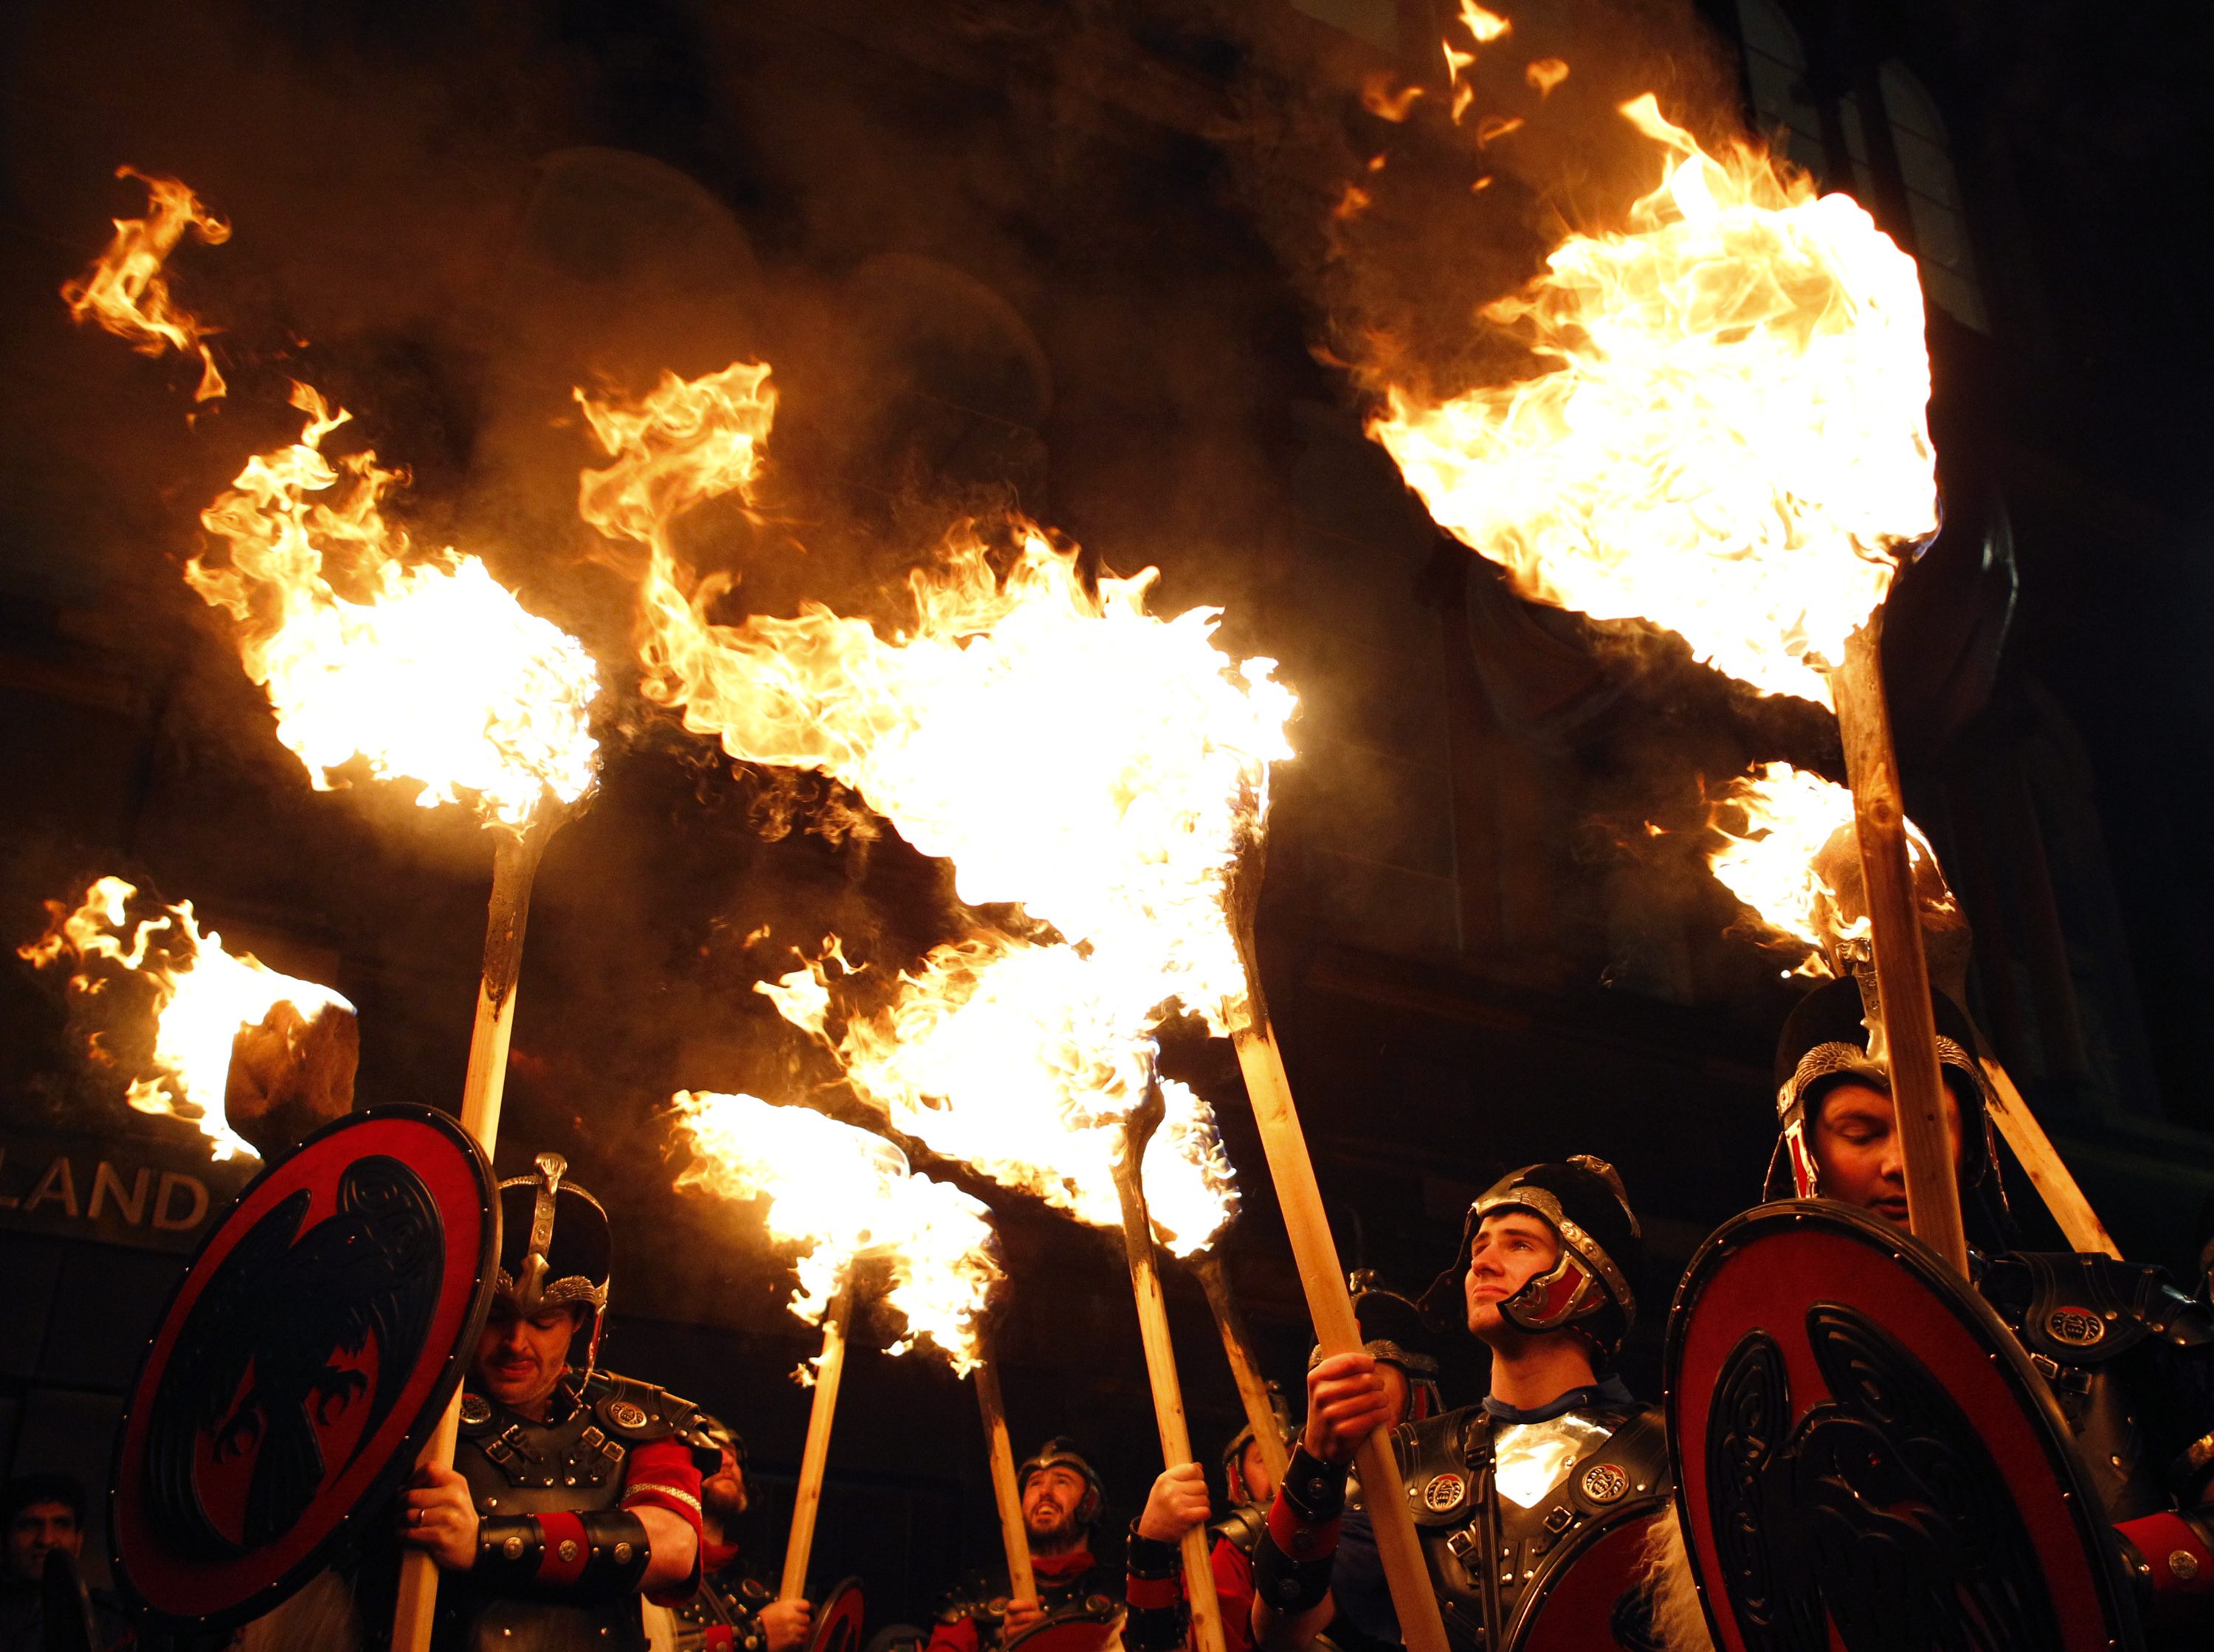 Βίκινγκς από τα νησιά Shetland της Σκωτίας, με πυρσούς στα χέρια, μετέχουν στην ετήσια τελετή για την έλευση του νέου χρόνου